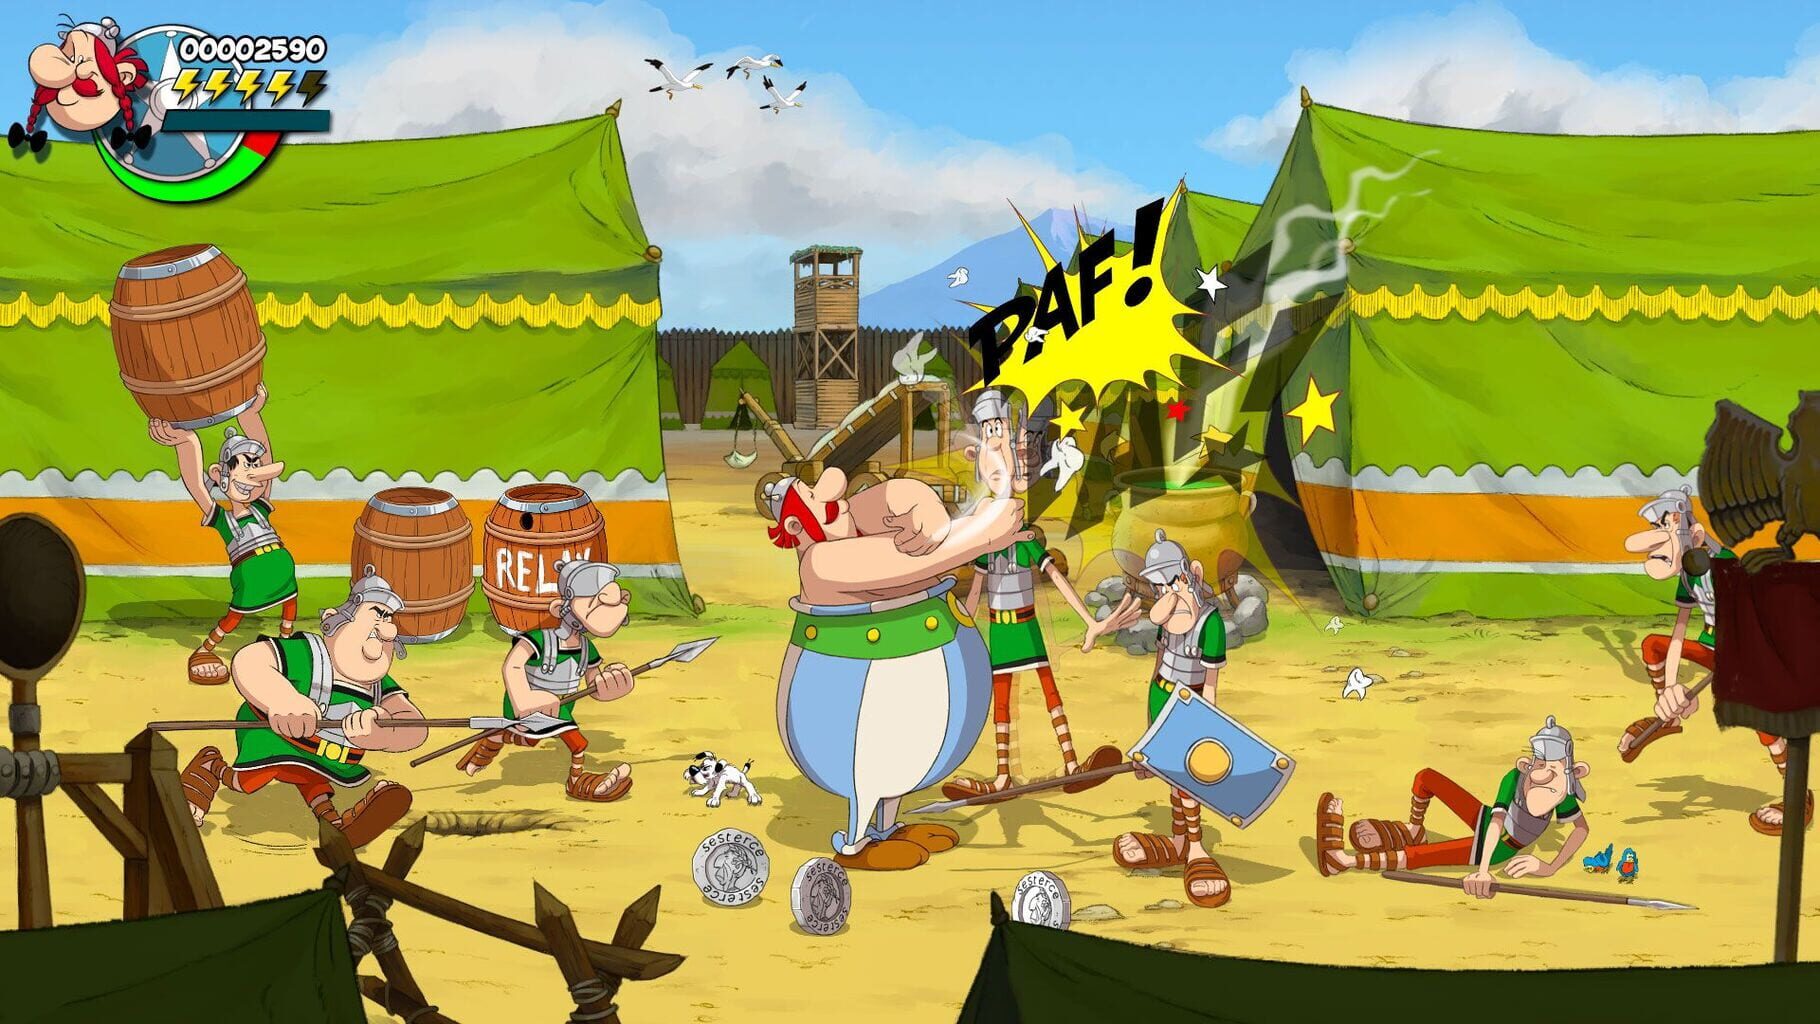 Asterix & Obelix: Slap Them All! - Collector's Edition screenshot